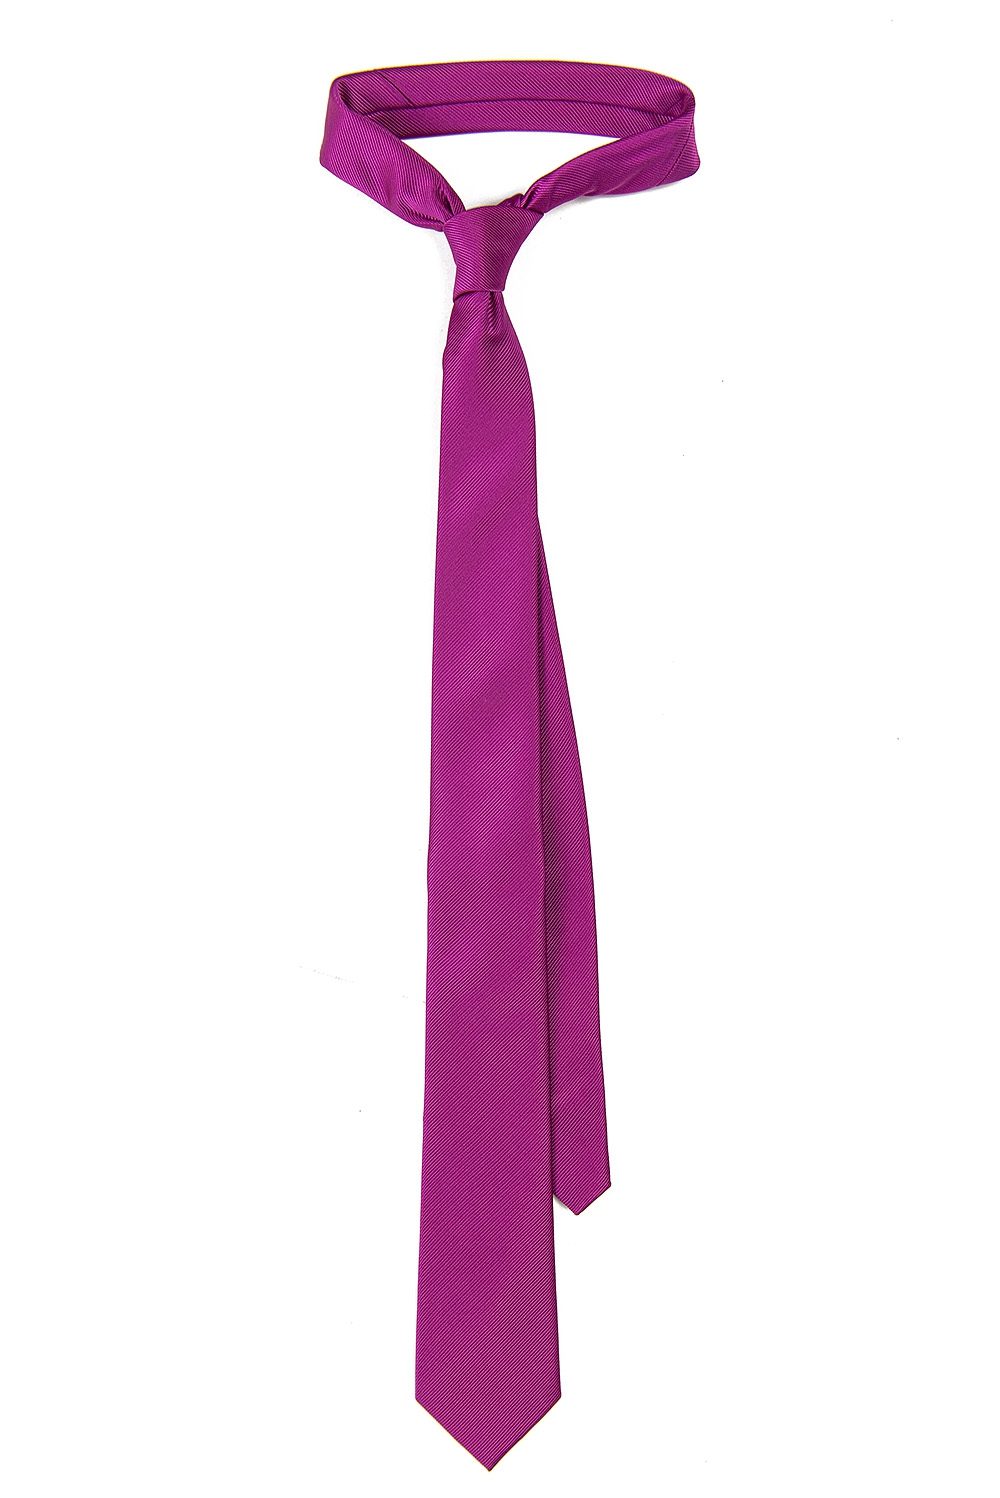 Cravata poliester tesut roz uni 0